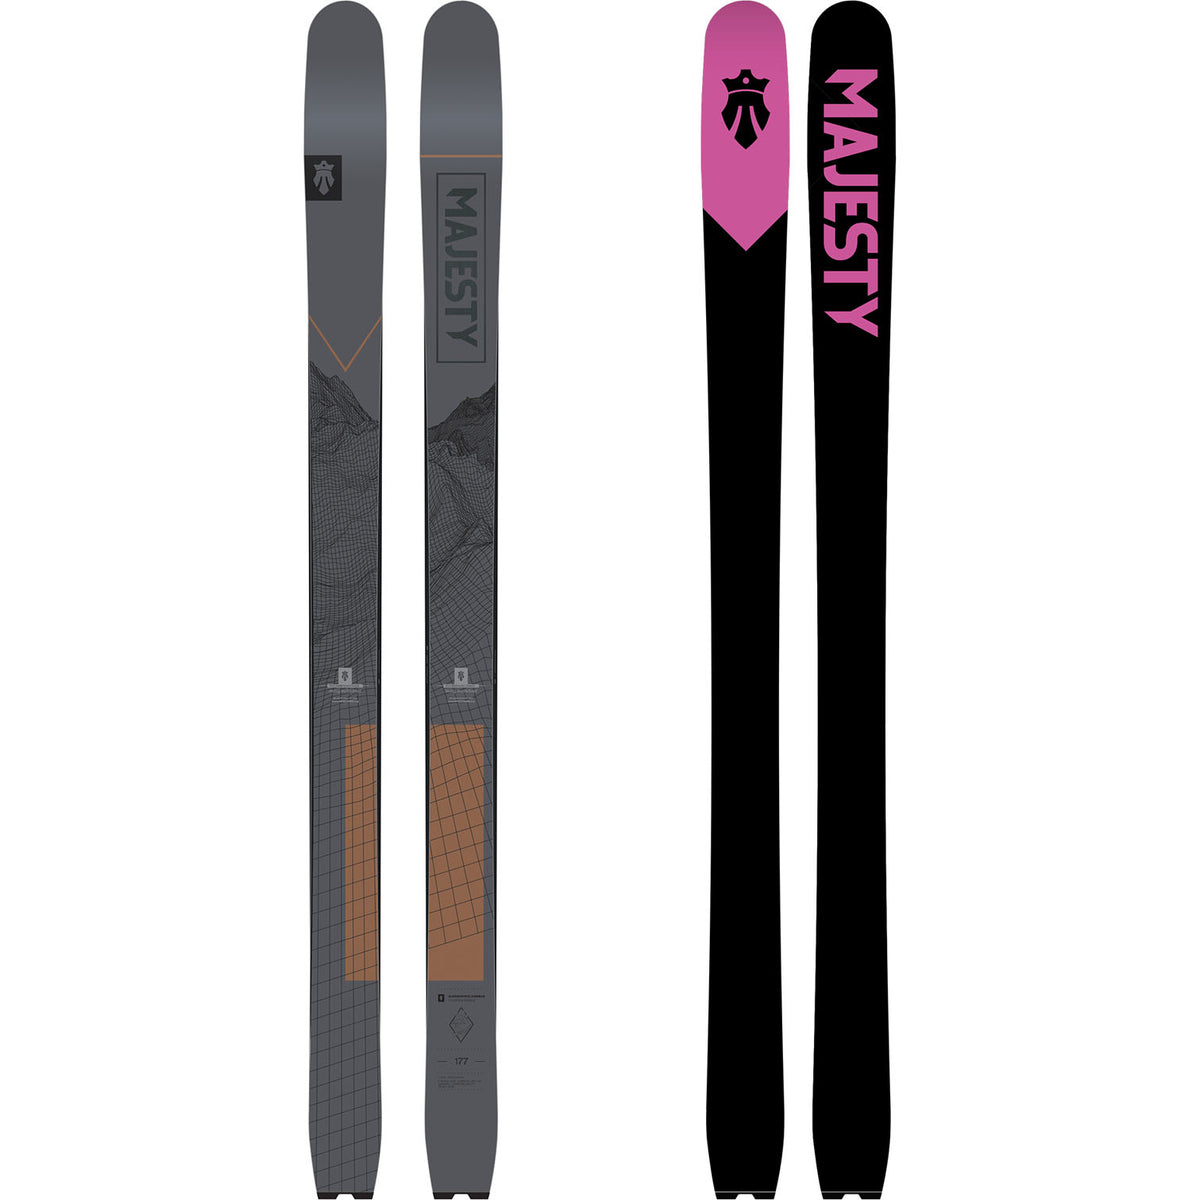 MAJESTY Freestyle Telescopic ski poles - MAJESTY SKIS - Skis